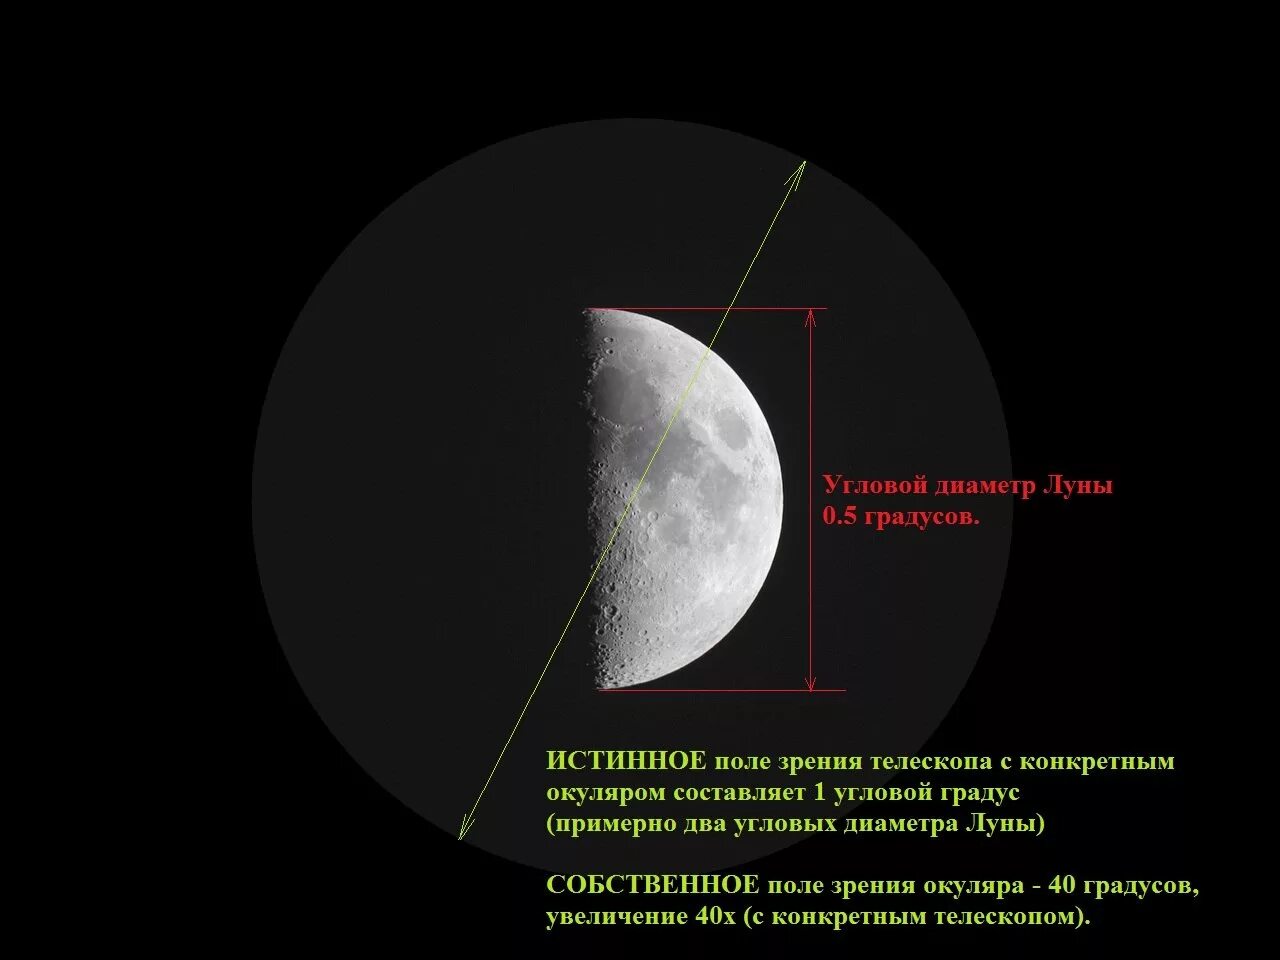 Видимое поле зрения окуляра. Поле зрения телескопа. Кратность увеличения телескопа. Угловой диаметр лунного диска. Расстояние до поверхности луны